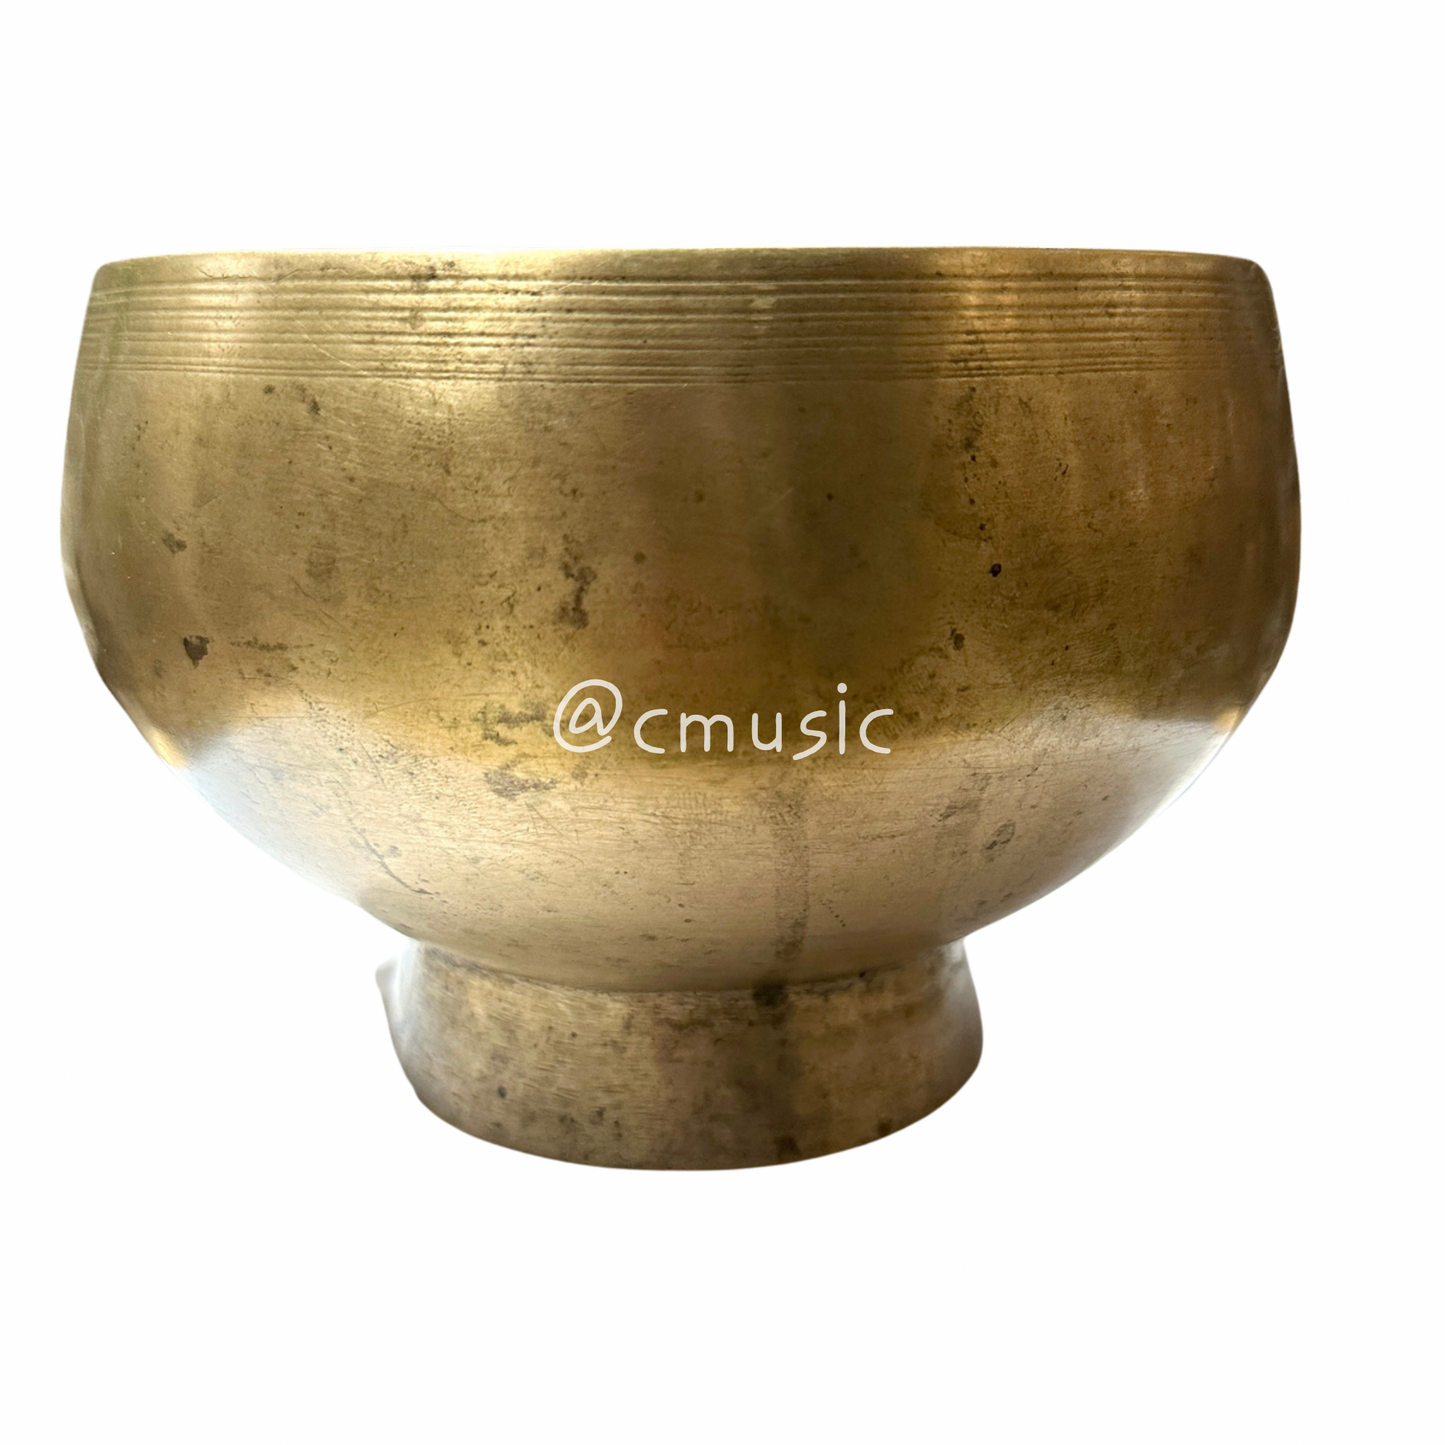 Antique Naga/Pedestal Singing Bowl 納珈古董缽-Note C4